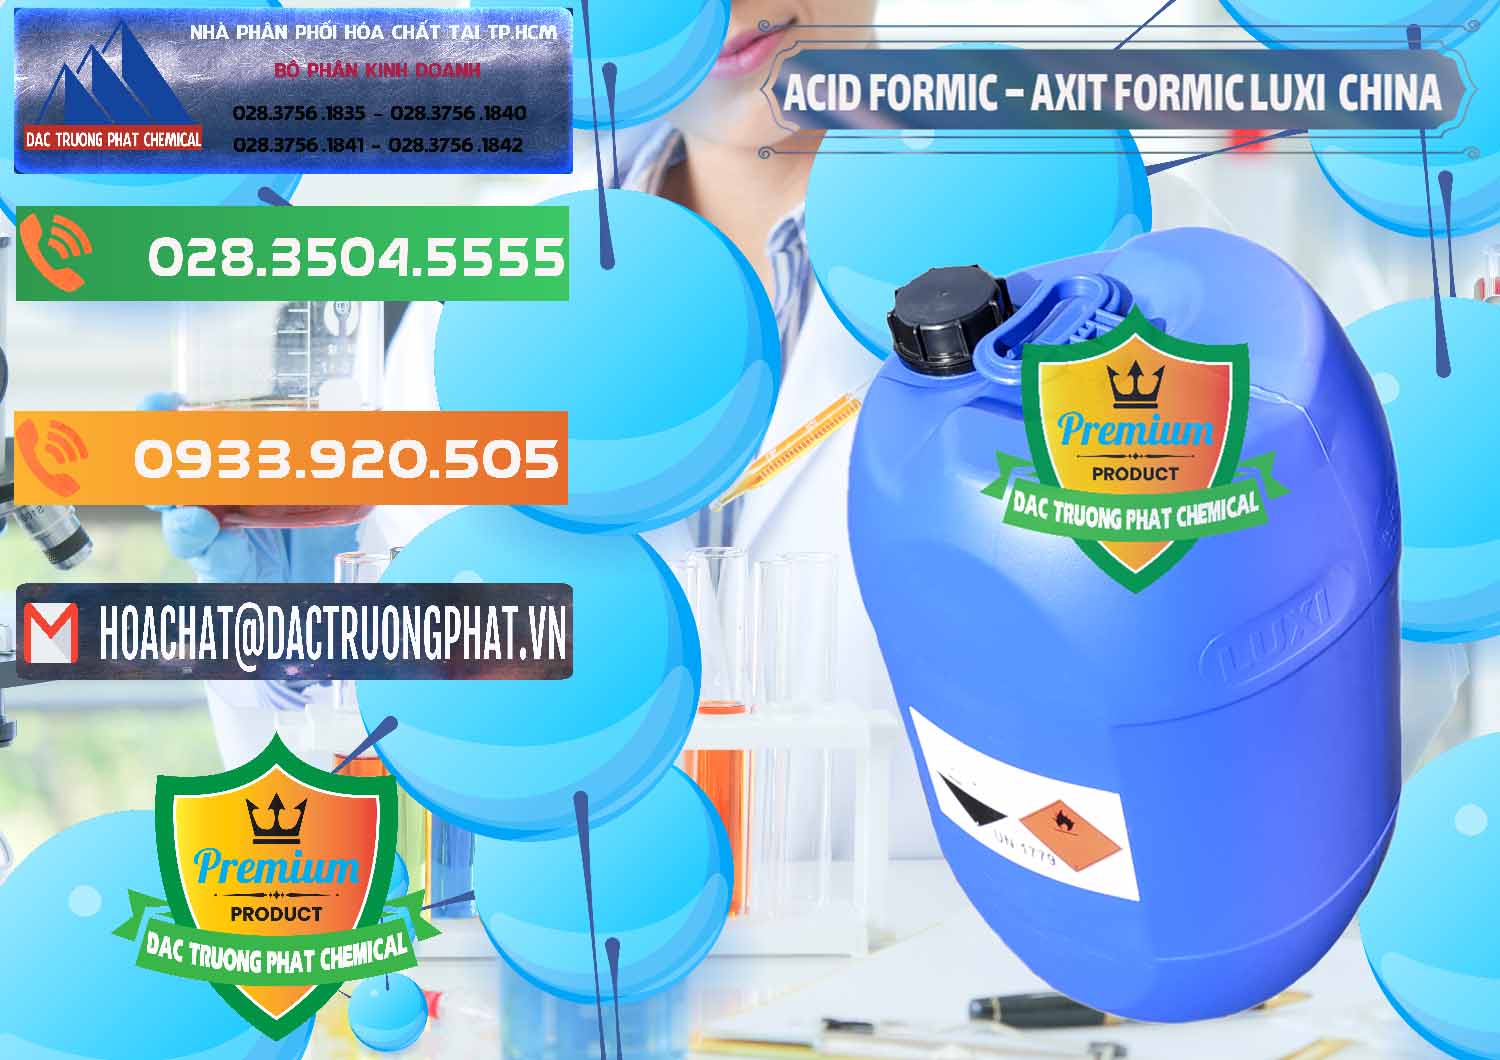 Cty chuyên cung cấp & bán Acid Formic - Axit Formic Luxi Trung Quốc China - 0029 - Nơi bán và phân phối hóa chất tại TP.HCM - hoachatxulynuoc.com.vn